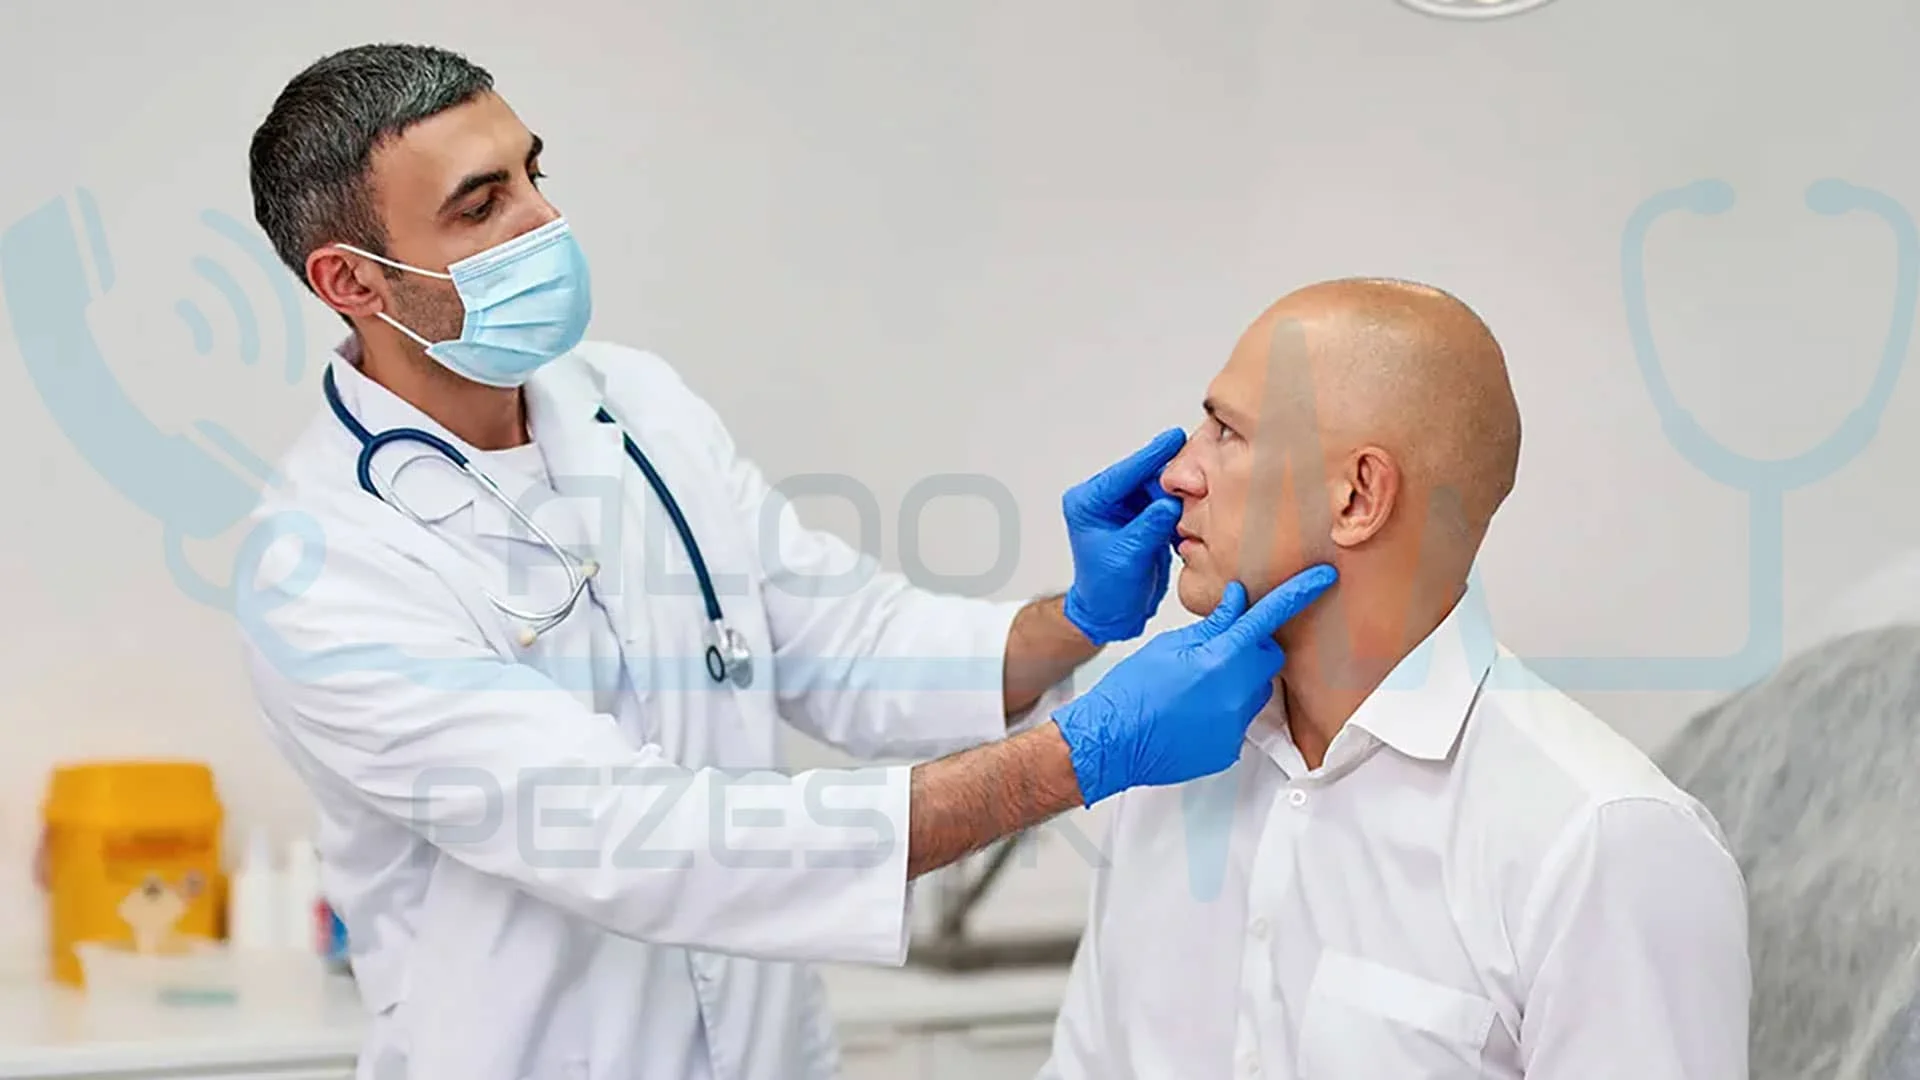 بهترین جراح بینی در تهران